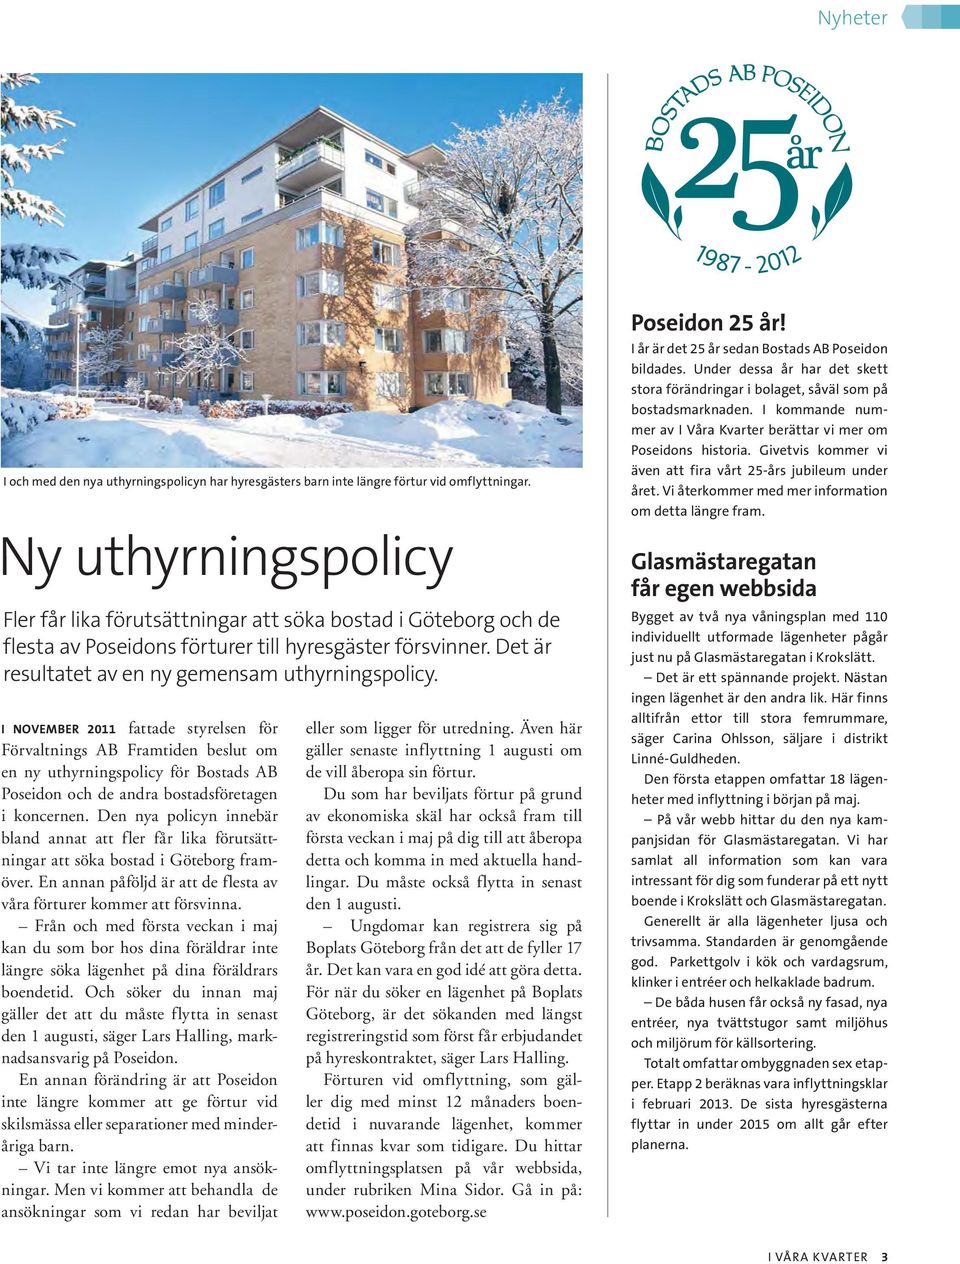 I NOVEMBER 2011 fattade styrelsen för Förvaltnings AB Framtiden beslut om en ny uthyrningspolicy för Bostads AB Poseidon och de andra bostadsföretagen i koncernen.